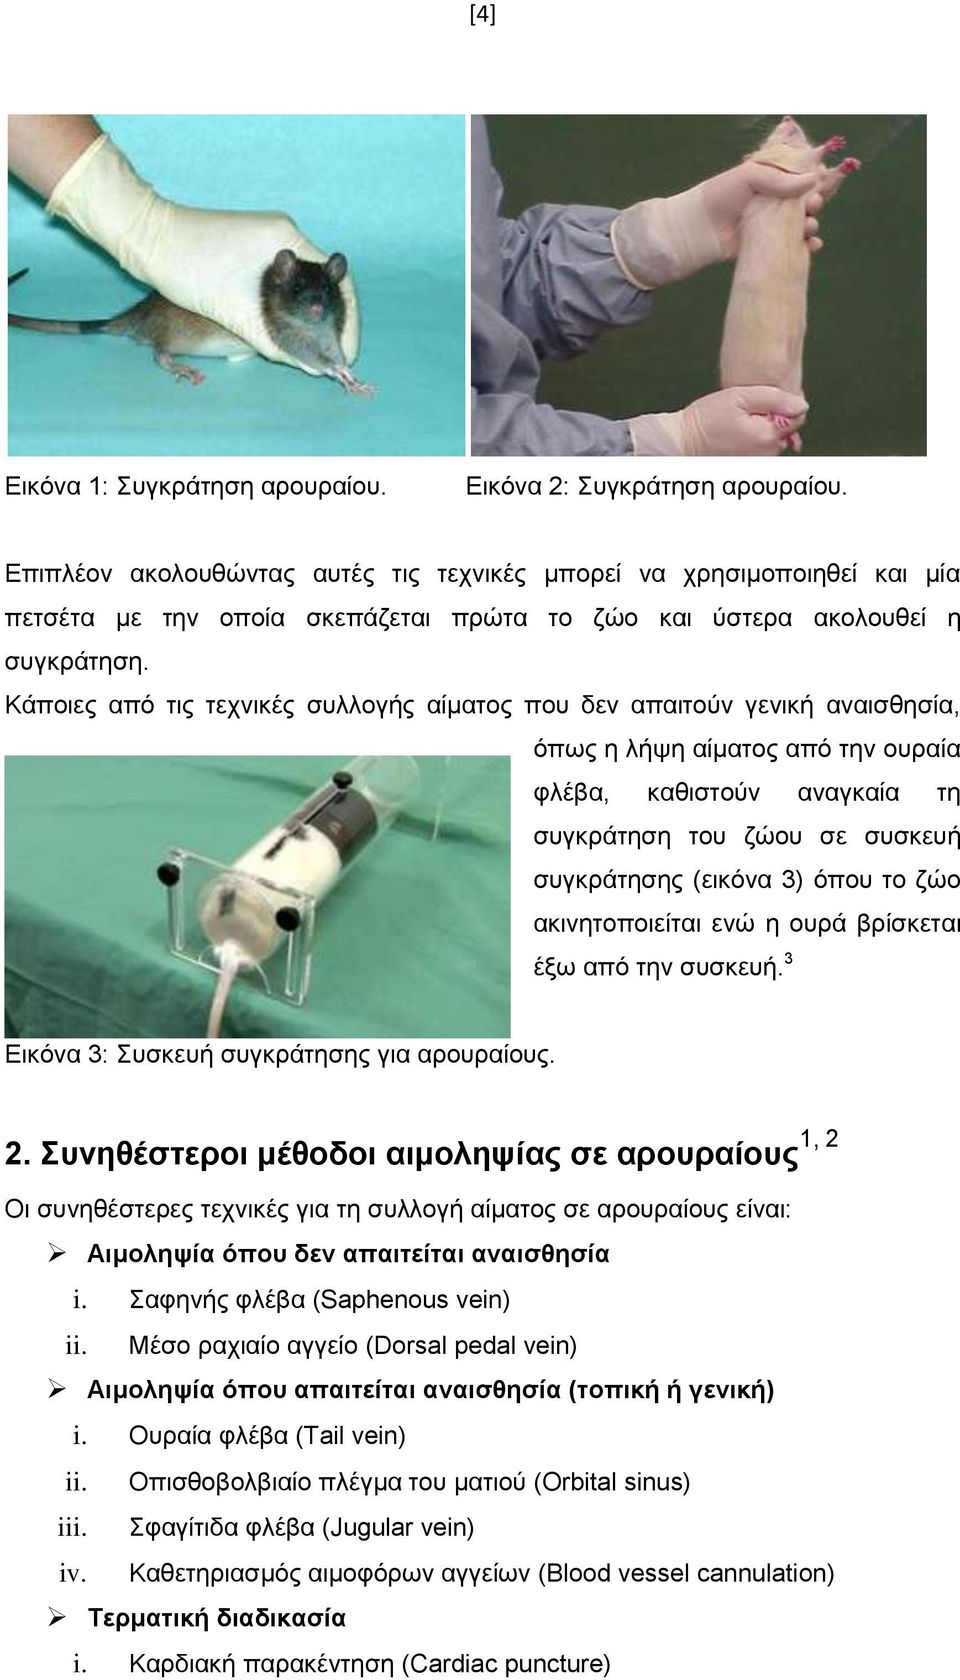 Κάποιες από τις τεχνικές συλλογής αίματος που δεν απαιτούν γενική αναισθησία, όπως η λήψη αίματος από την ουραία φλέβα, καθιστούν αναγκαία τη συγκράτηση του ζώου σε συσκευή συγκράτησης (εικόνα 3)